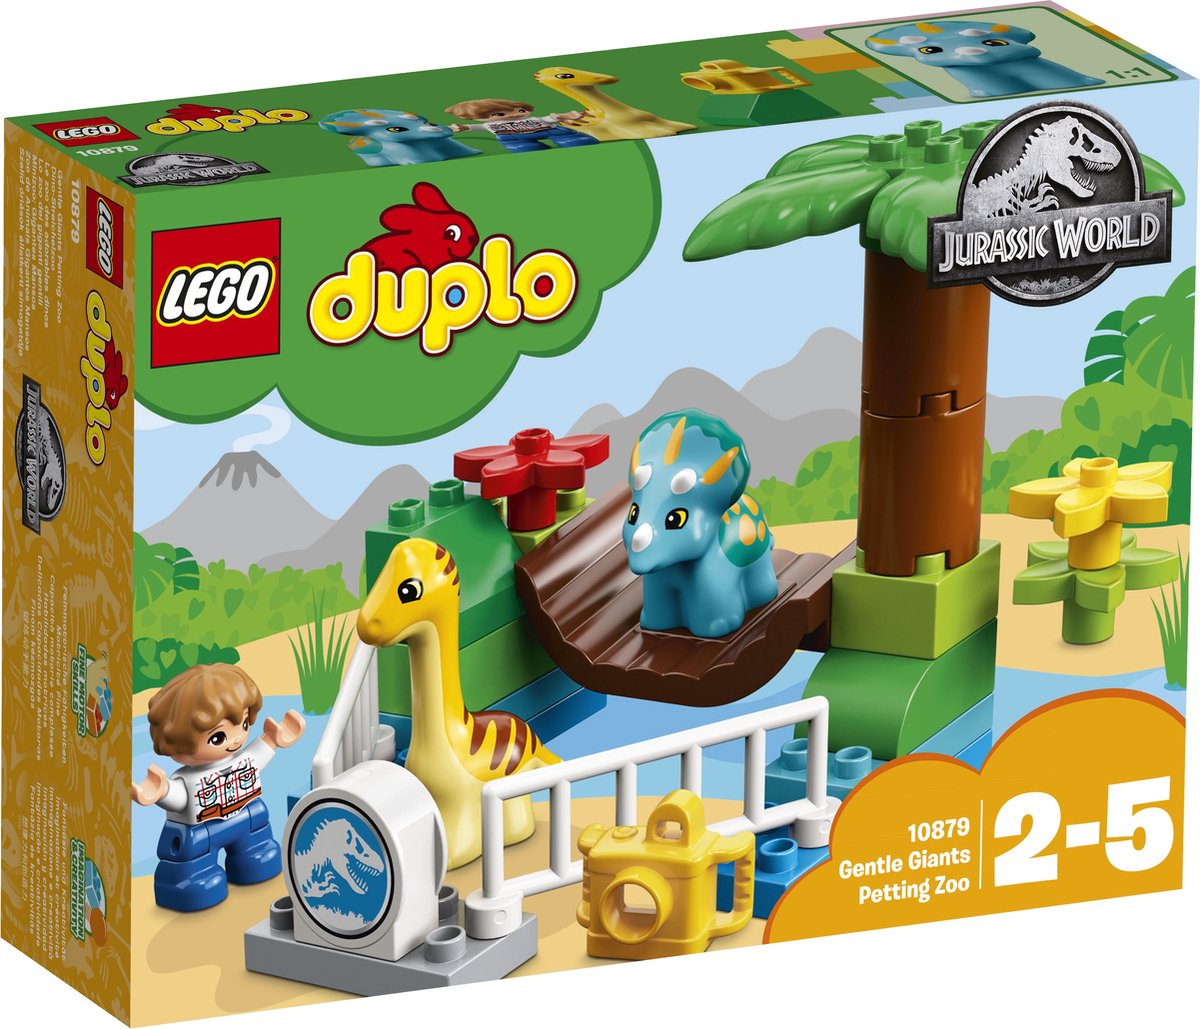 LEGO DUPLO Jurassic World Kinderboerderij met Vriendelijke Reuzen - 10879 |  bol.com